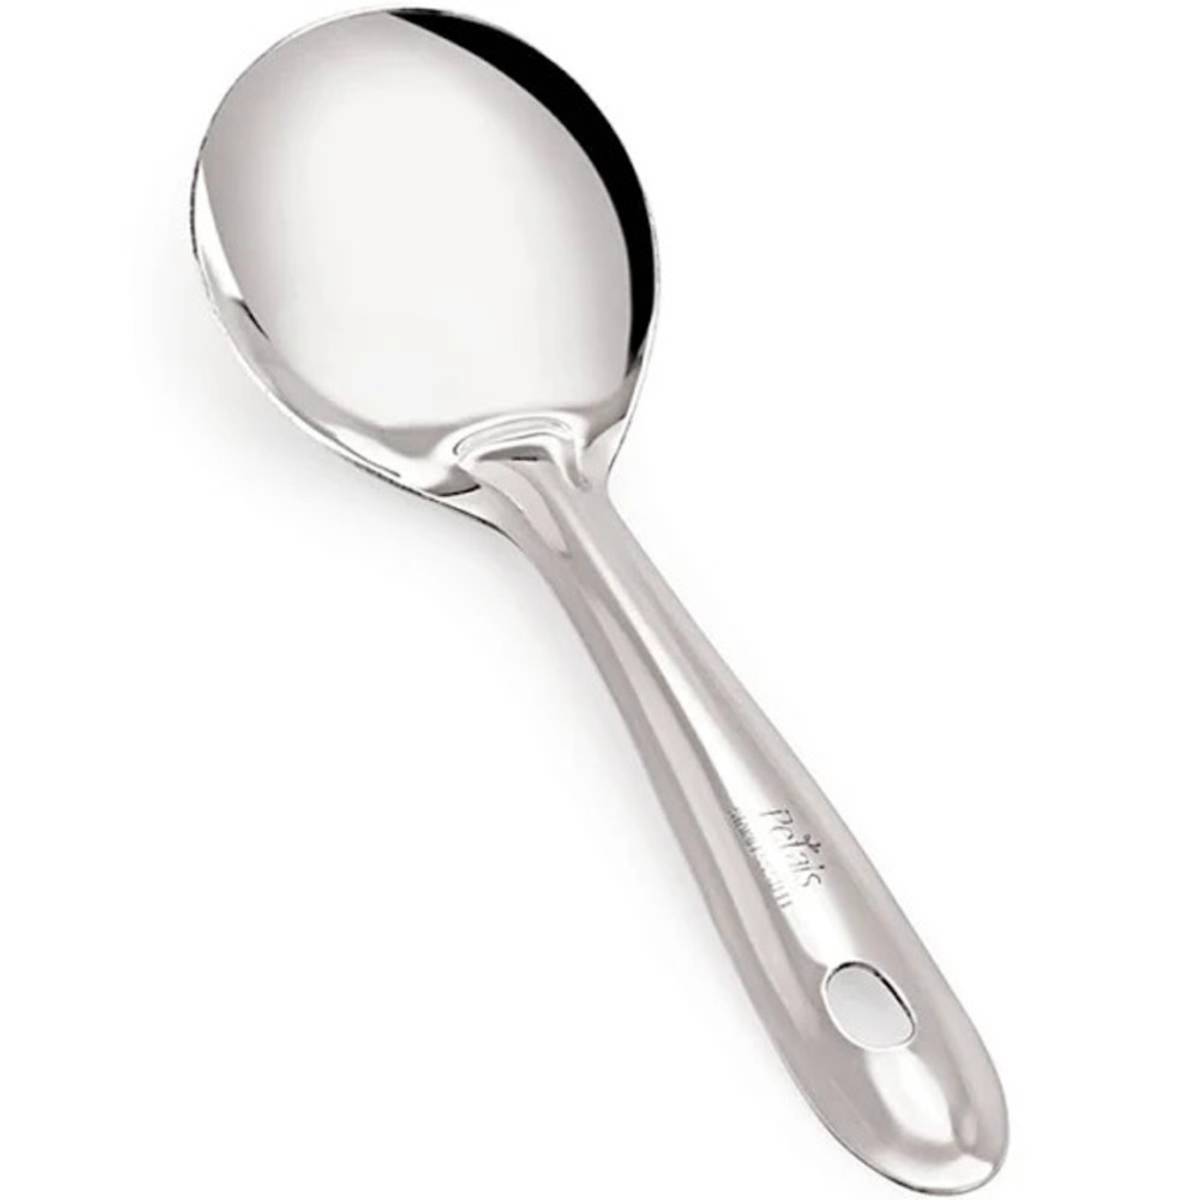 Pan Spoon (steel)